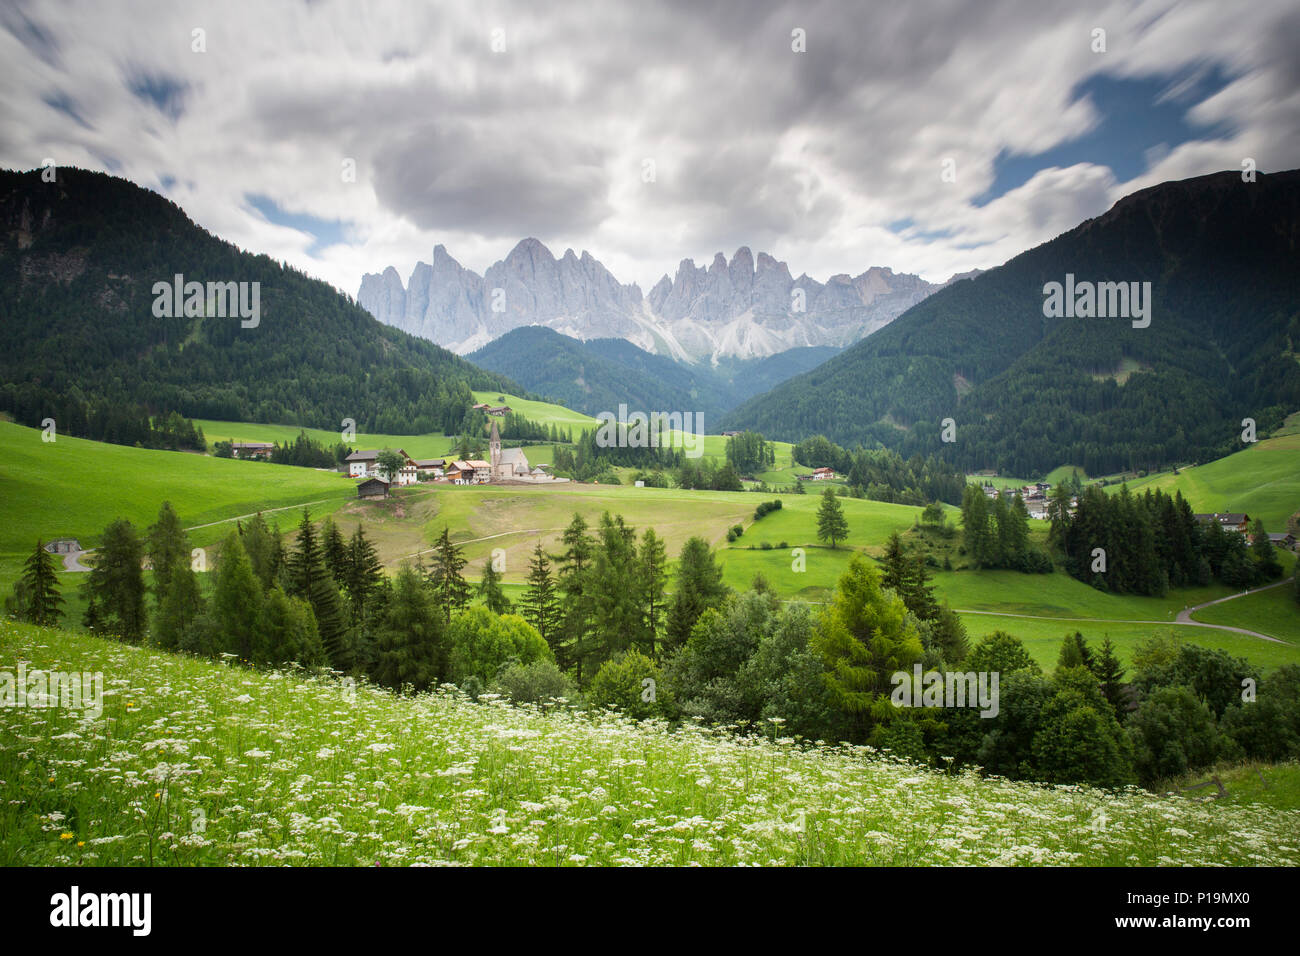 Maddalena villaggio in Val di Funes/Villnoss valley, provincia di alto adige, italia (lunga esposizione) Foto Stock